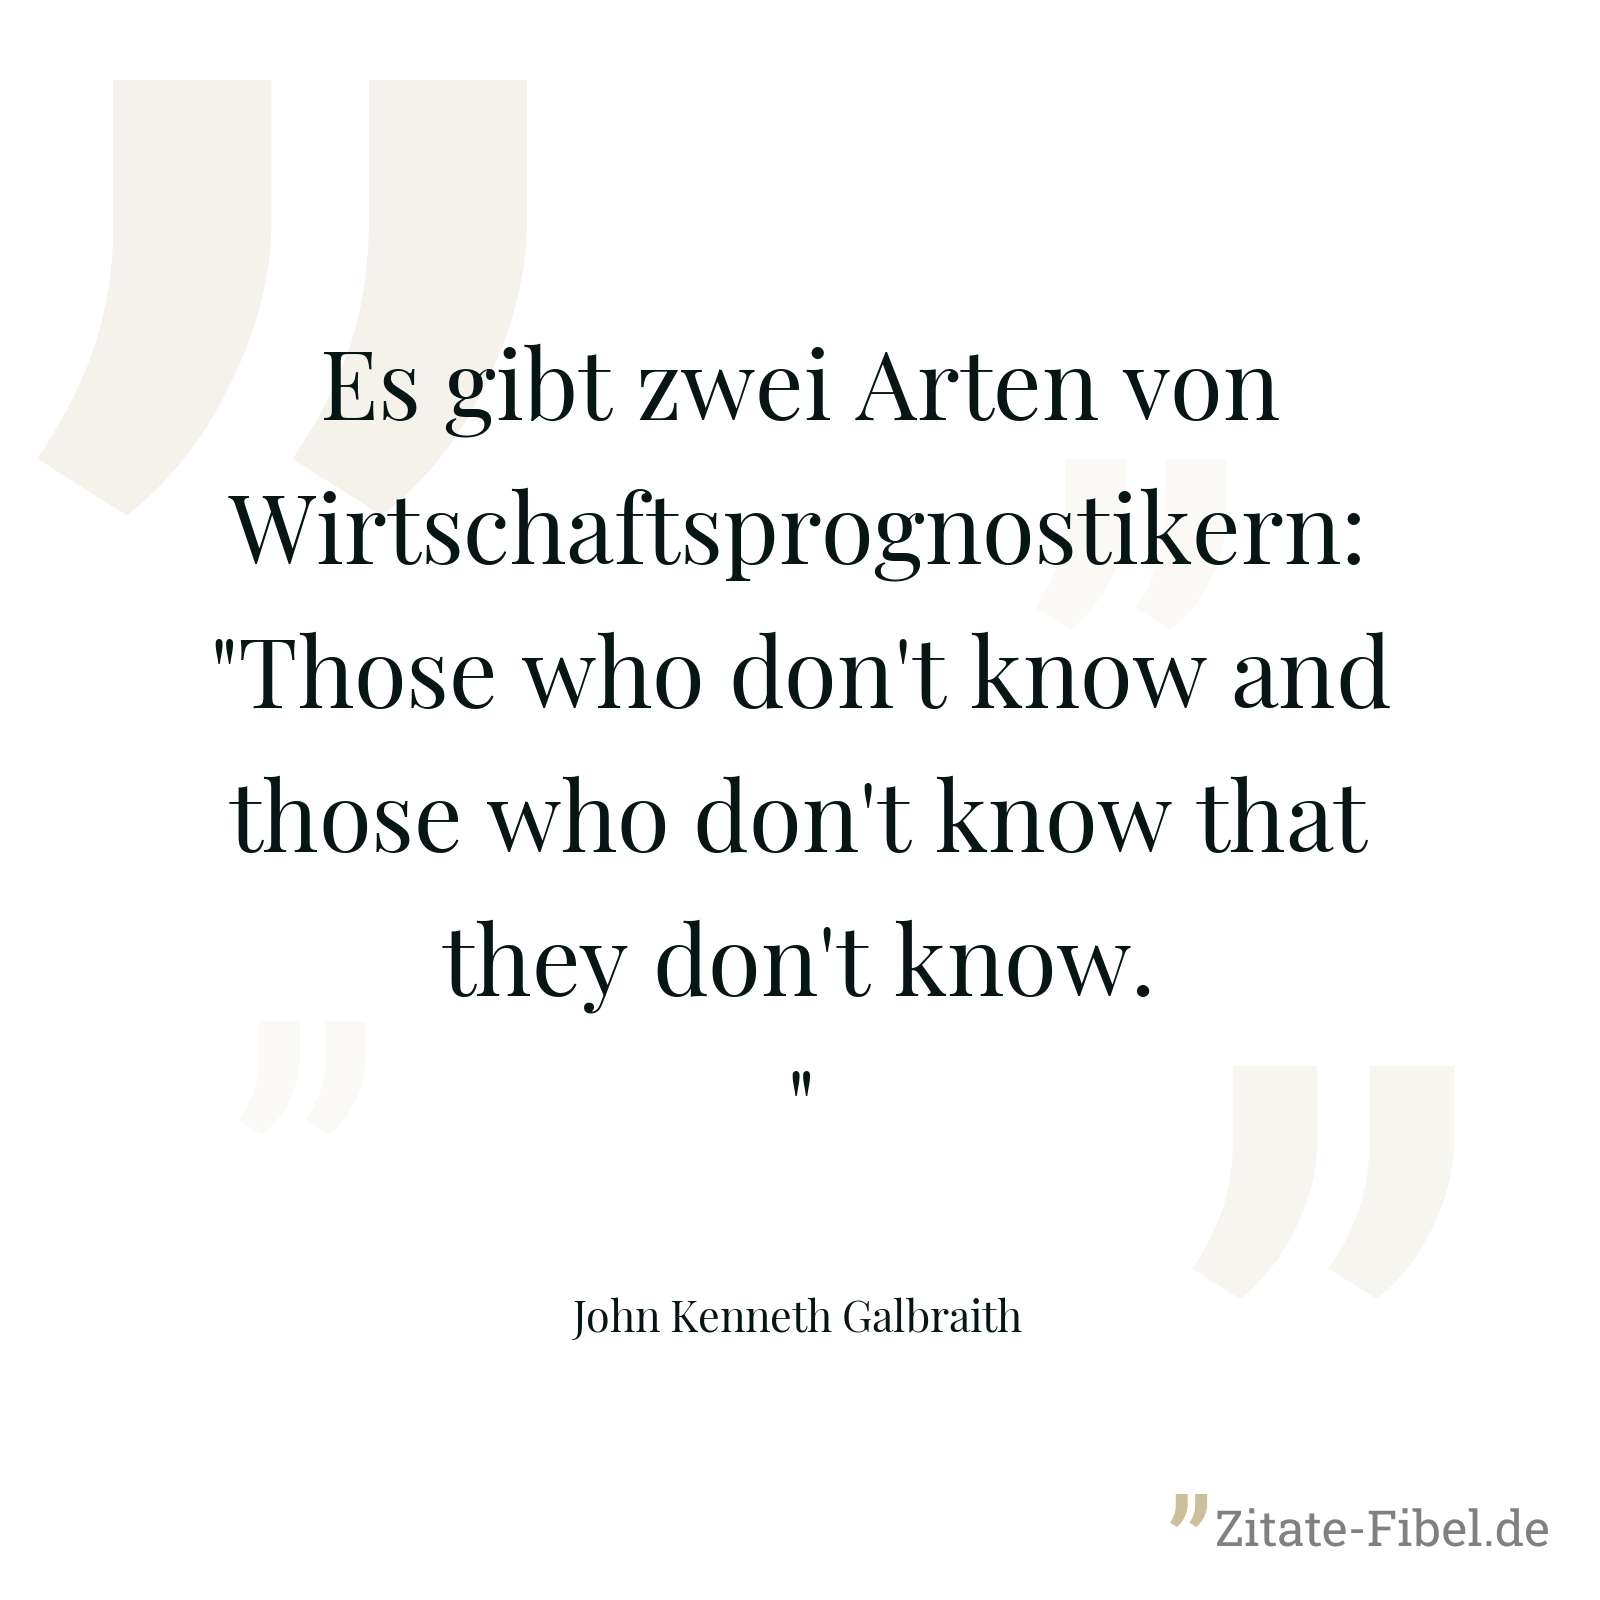 Es gibt zwei Arten von Wirtschaftsprognostikern: "Those who don't know and those who don't know that they don't know." - John Kenneth Galbraith